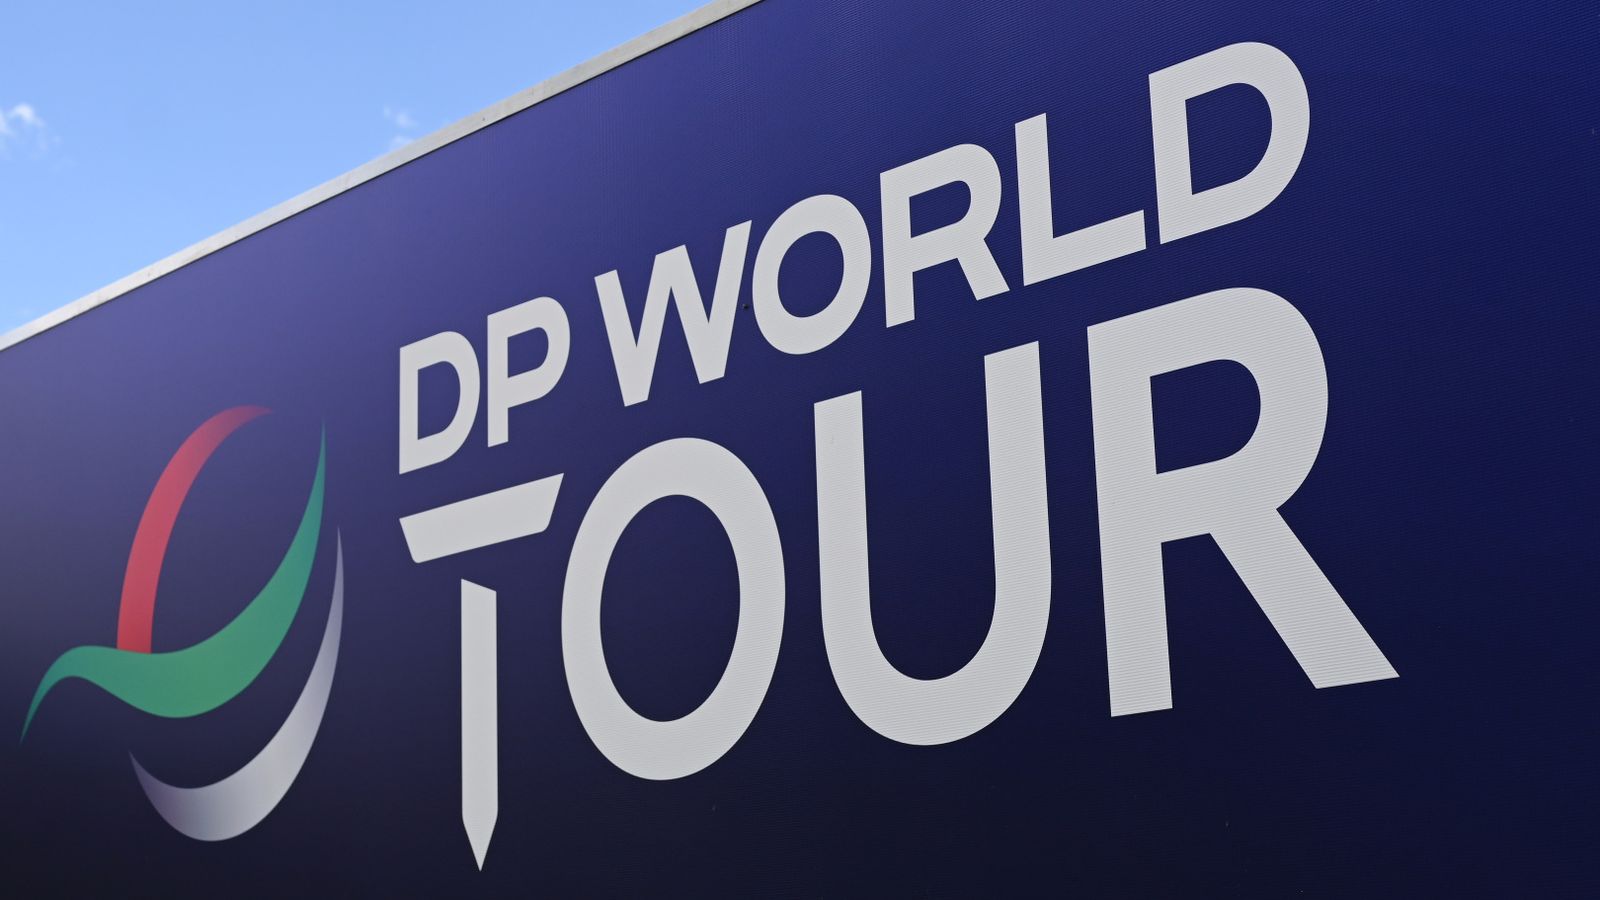 dp world tour decision on live